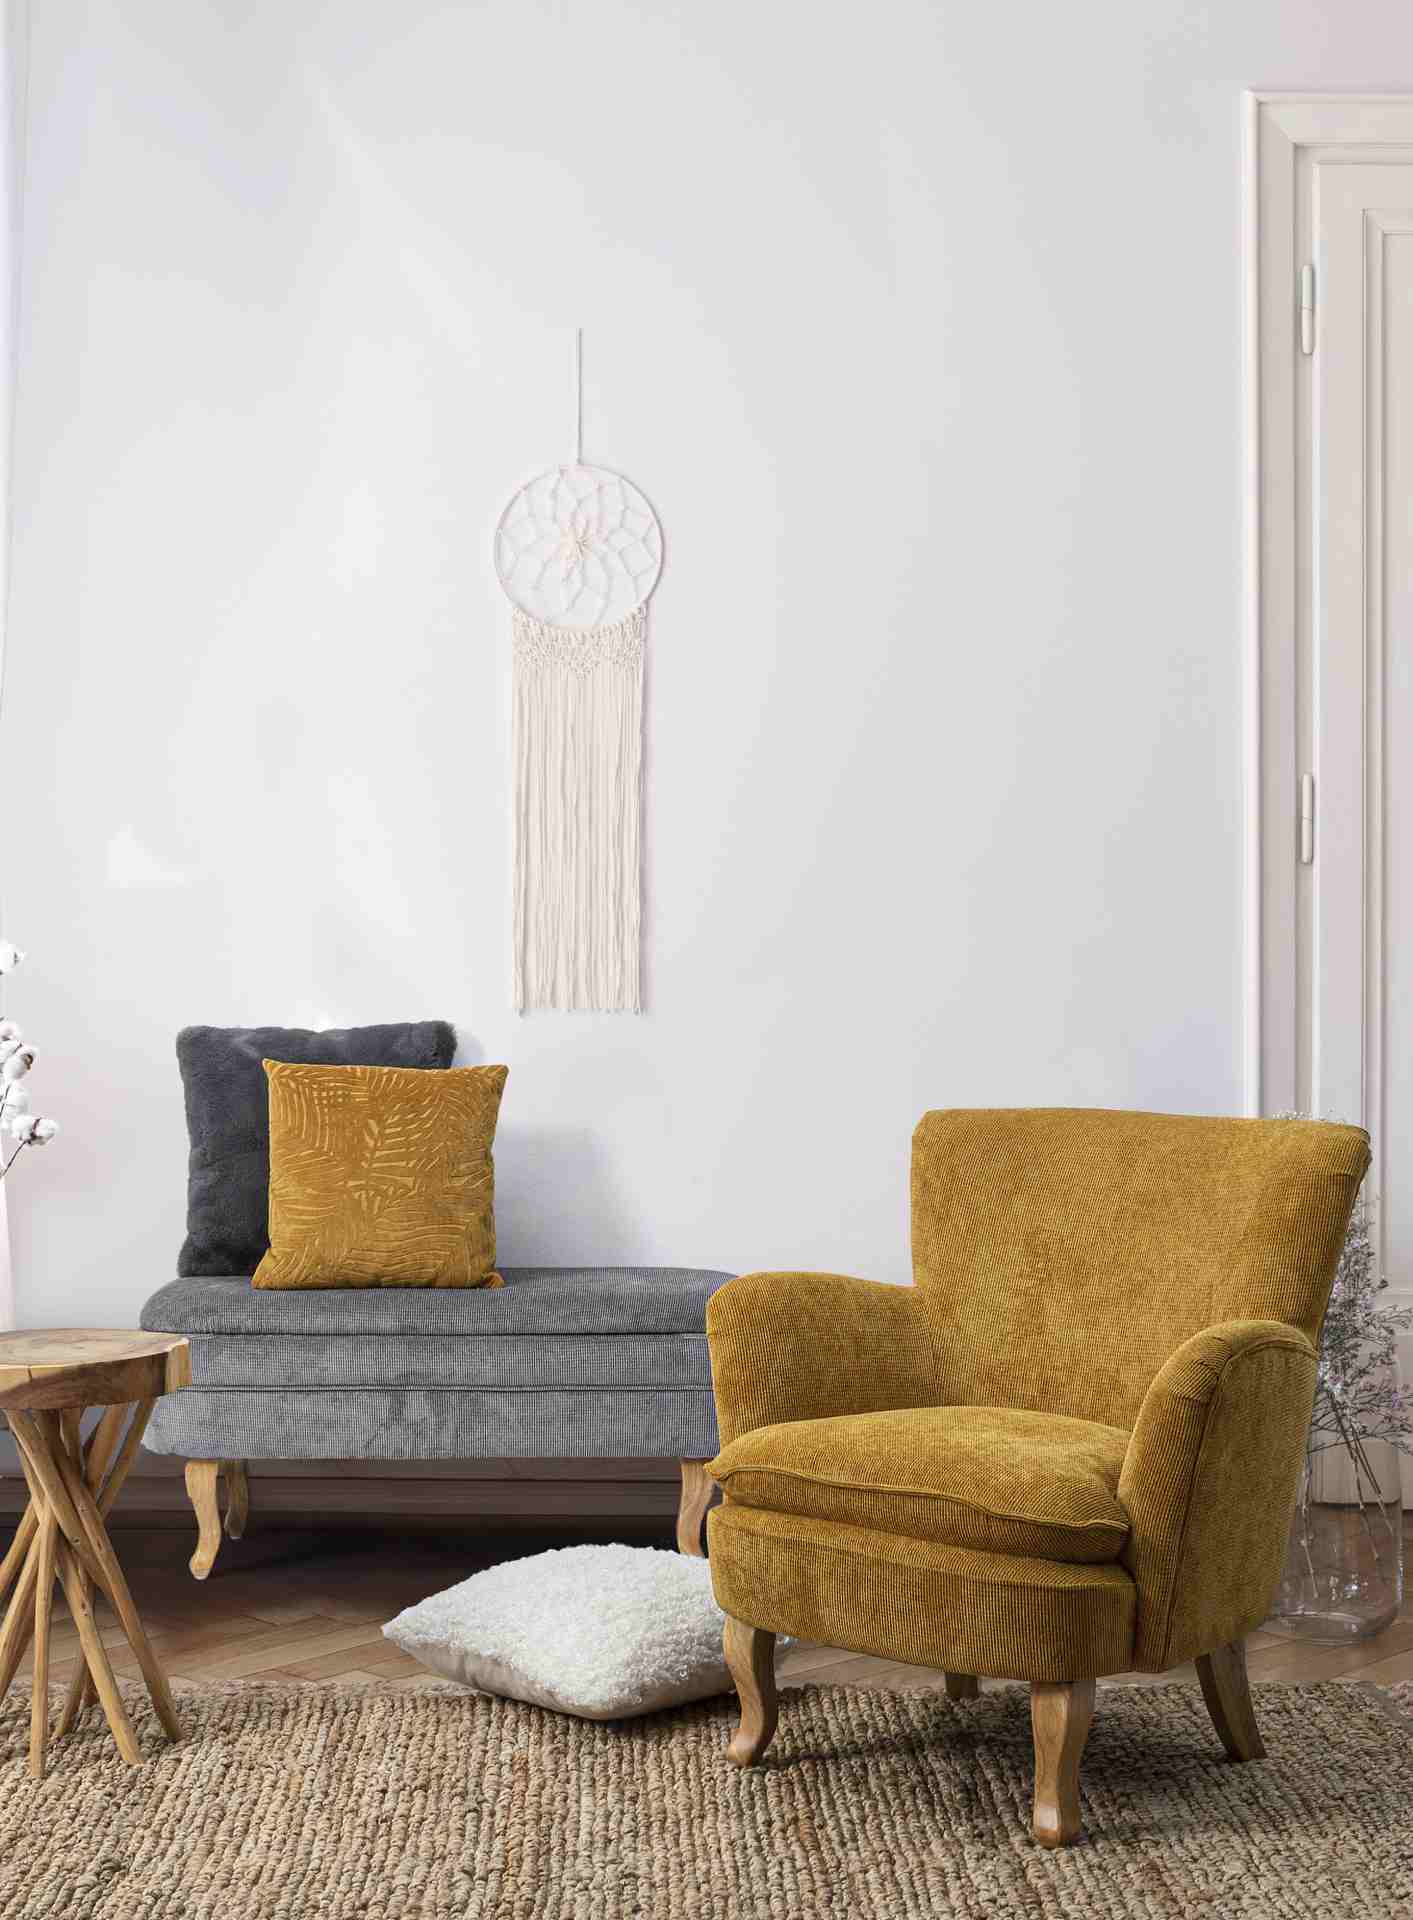 Der Sessel Chenille überzeugt mit seinem klassischen Design. Gefertigt wurde er aus Stoff in Cord-Optik, welcher einen gelben Farbton besitzt. Das Gestell ist aus Kautschukholz und hat eine natürliche Farbe. Der Sessel besitzt eine Sitzhöhe von 45 cm. Die